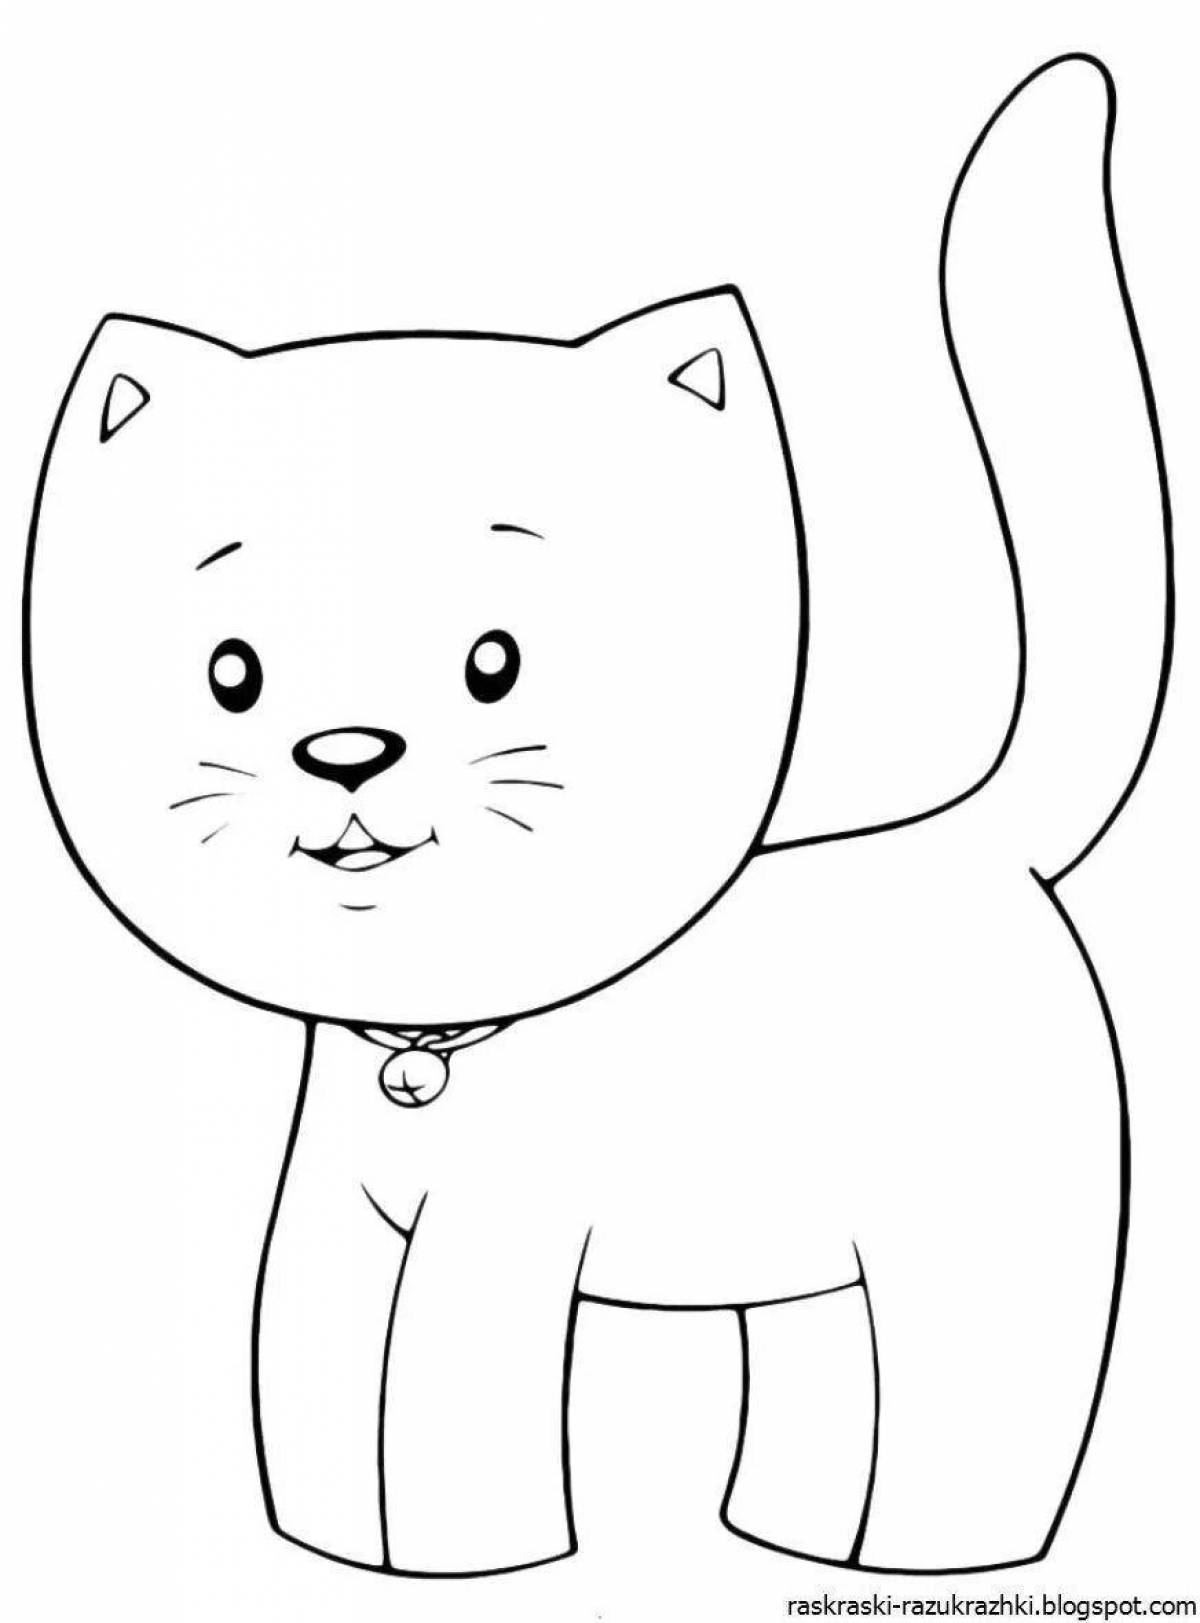 Творческая раскраска котенка для детей 2-3 лет